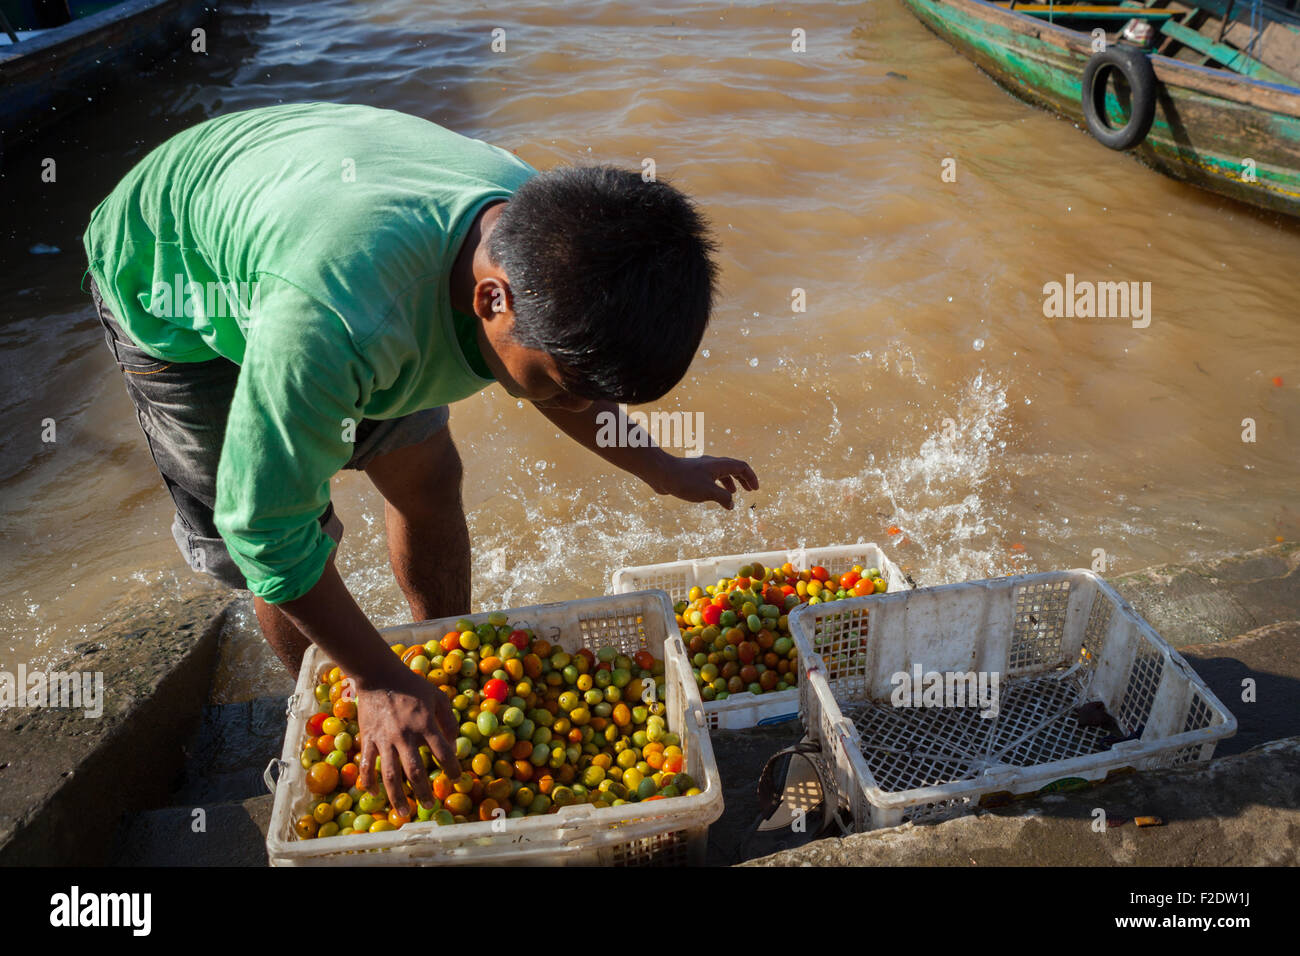 A man washing and sorting small tomatoes on river Musi in Palembang, South Sumatra, Indonesia. Stock Photo